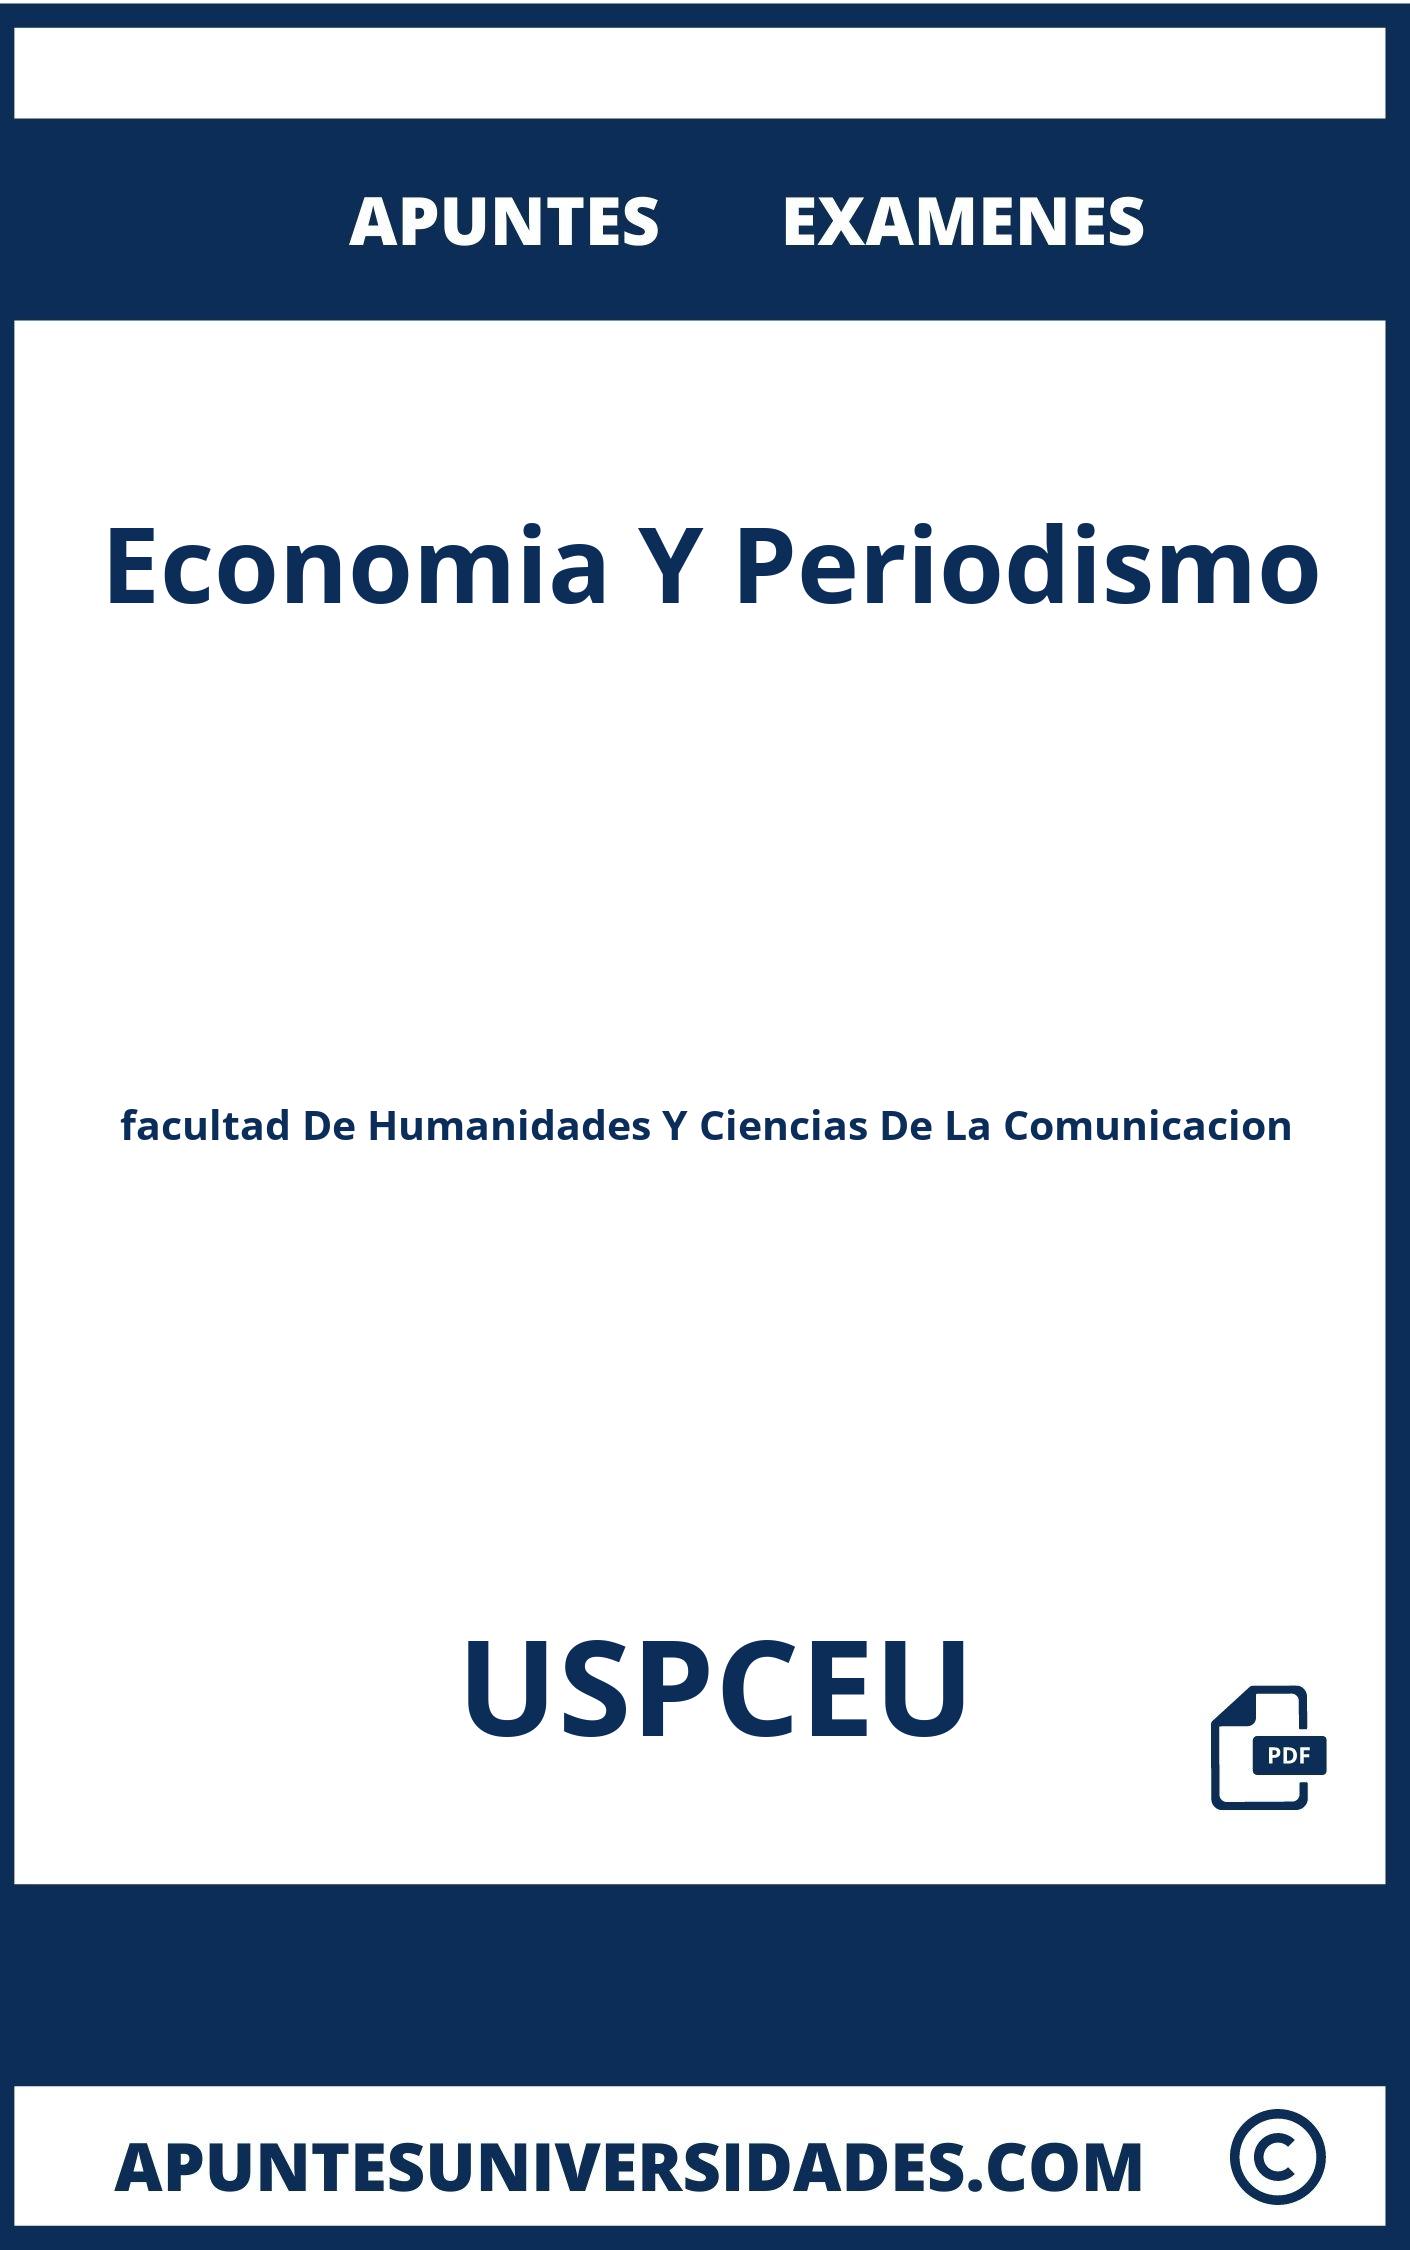 Examenes Apuntes Economia Y Periodismo USPCEU